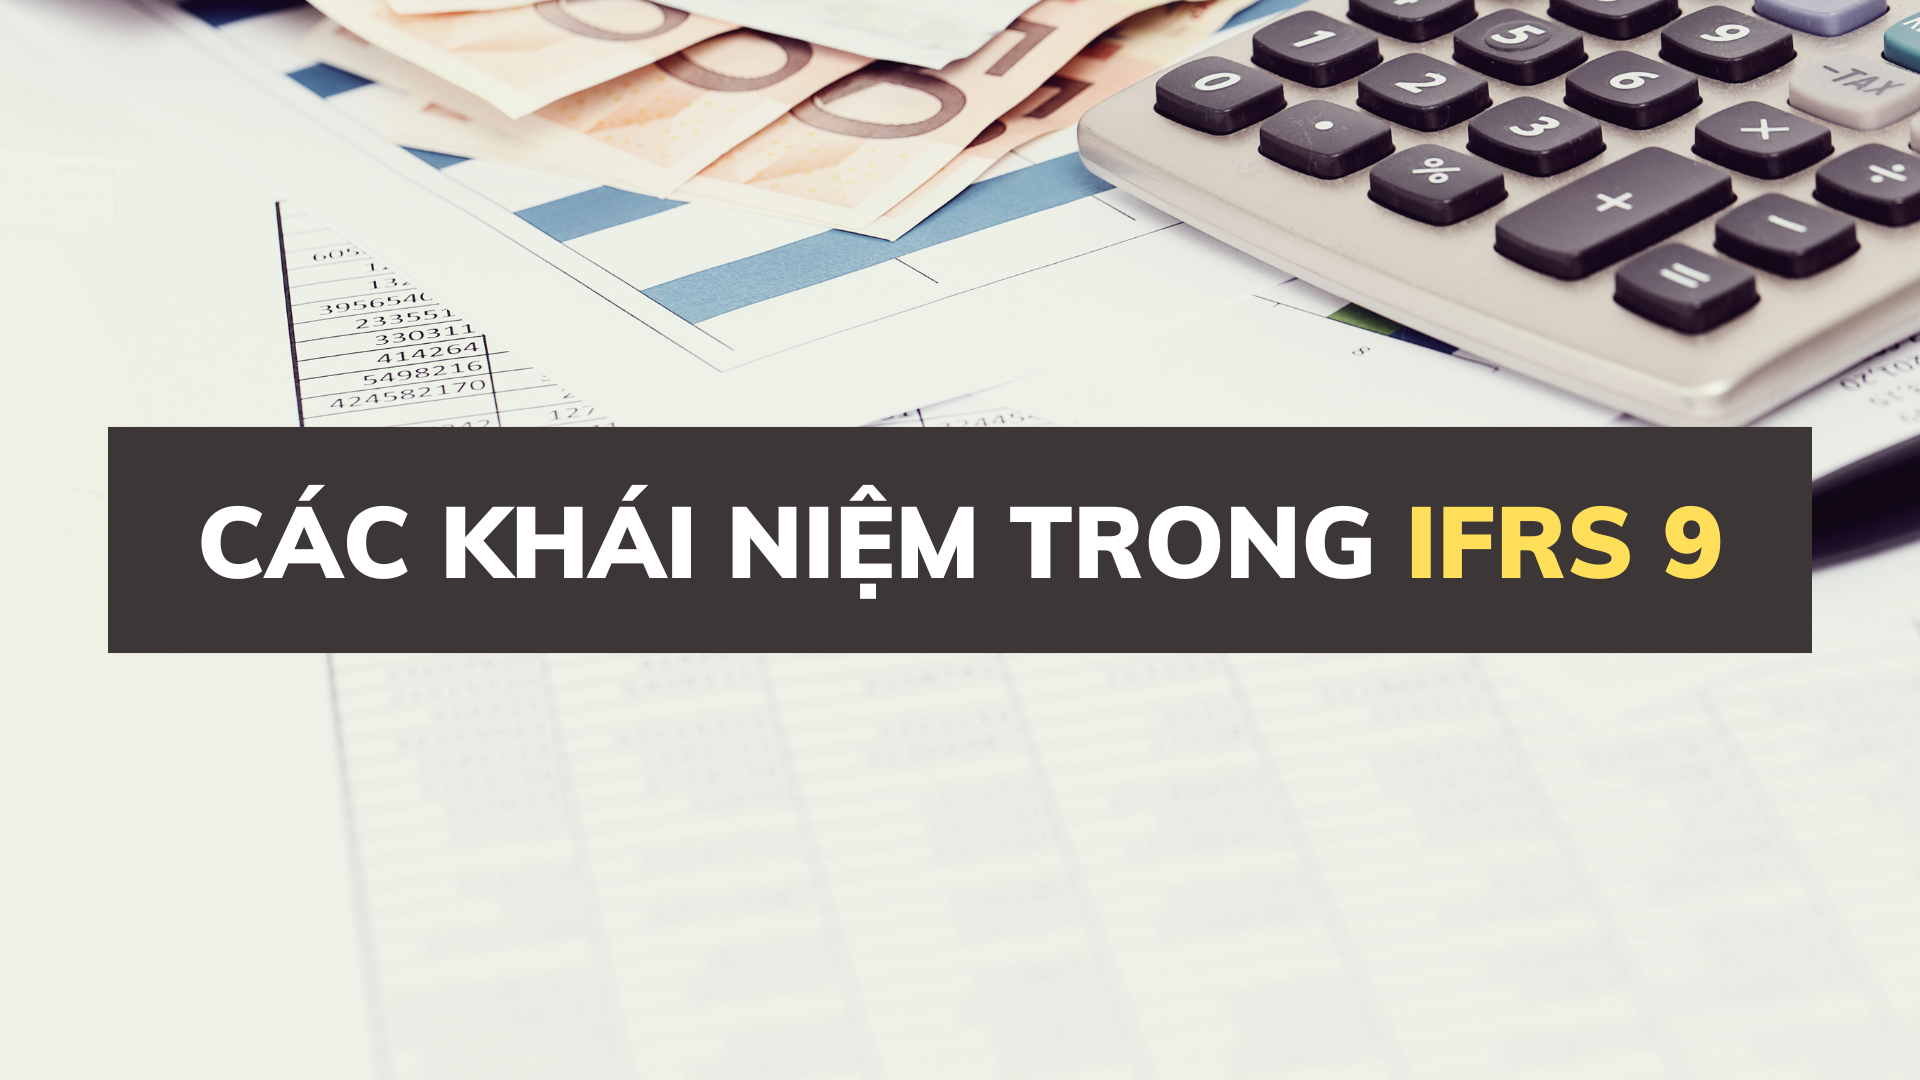 IFRS 9 - Công cụ tài chính - Học và thi CERTIFR tiếng Việt từ ACCA